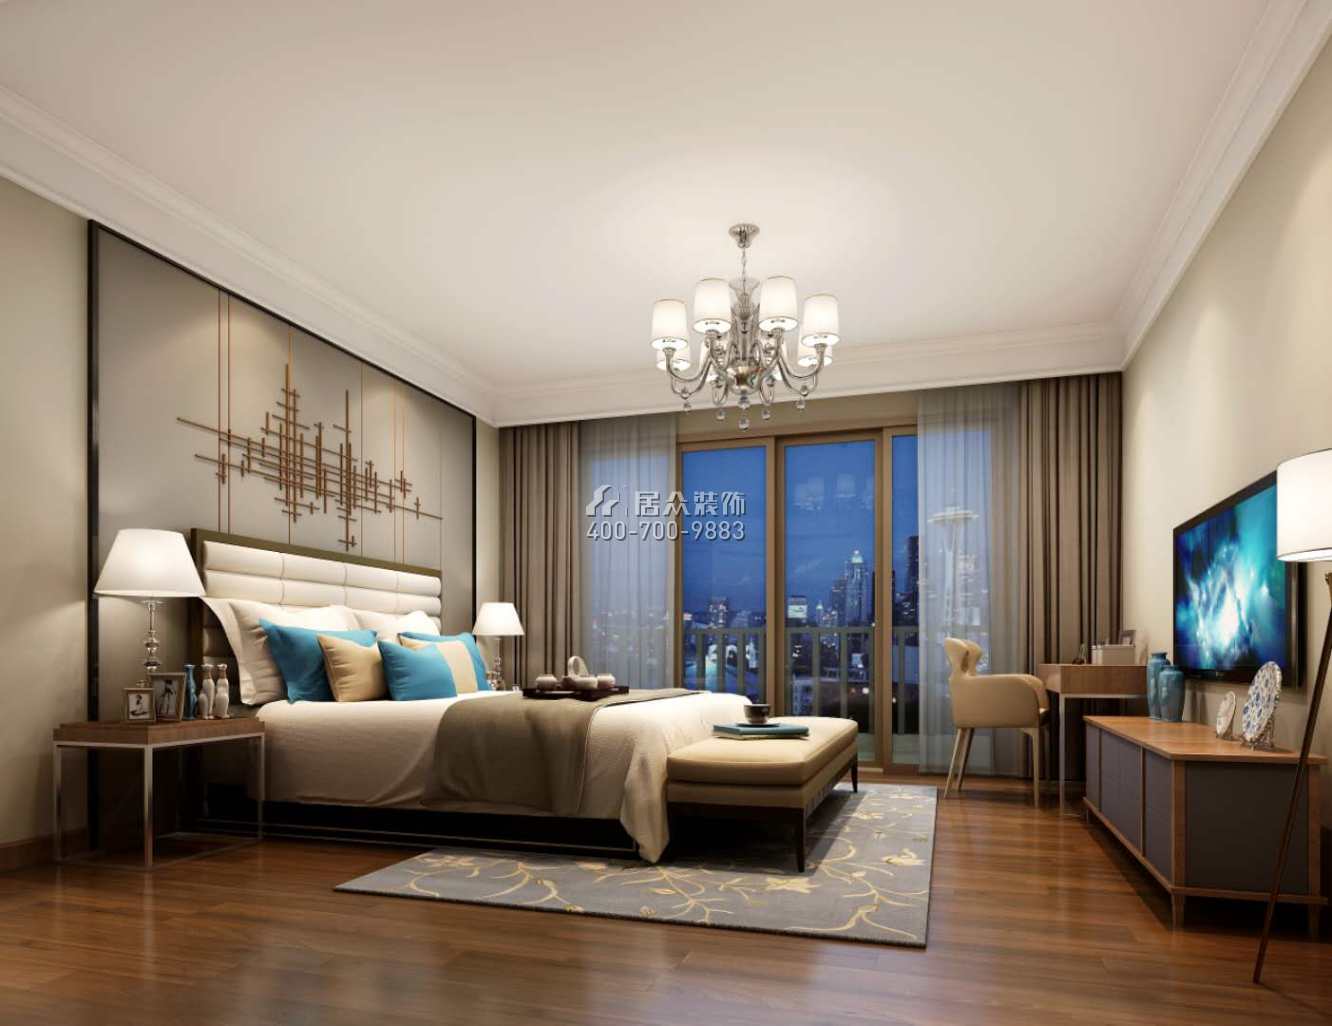 海逸豪庭尚都127平方米現代簡約風格復式戶型臥室裝修效果圖